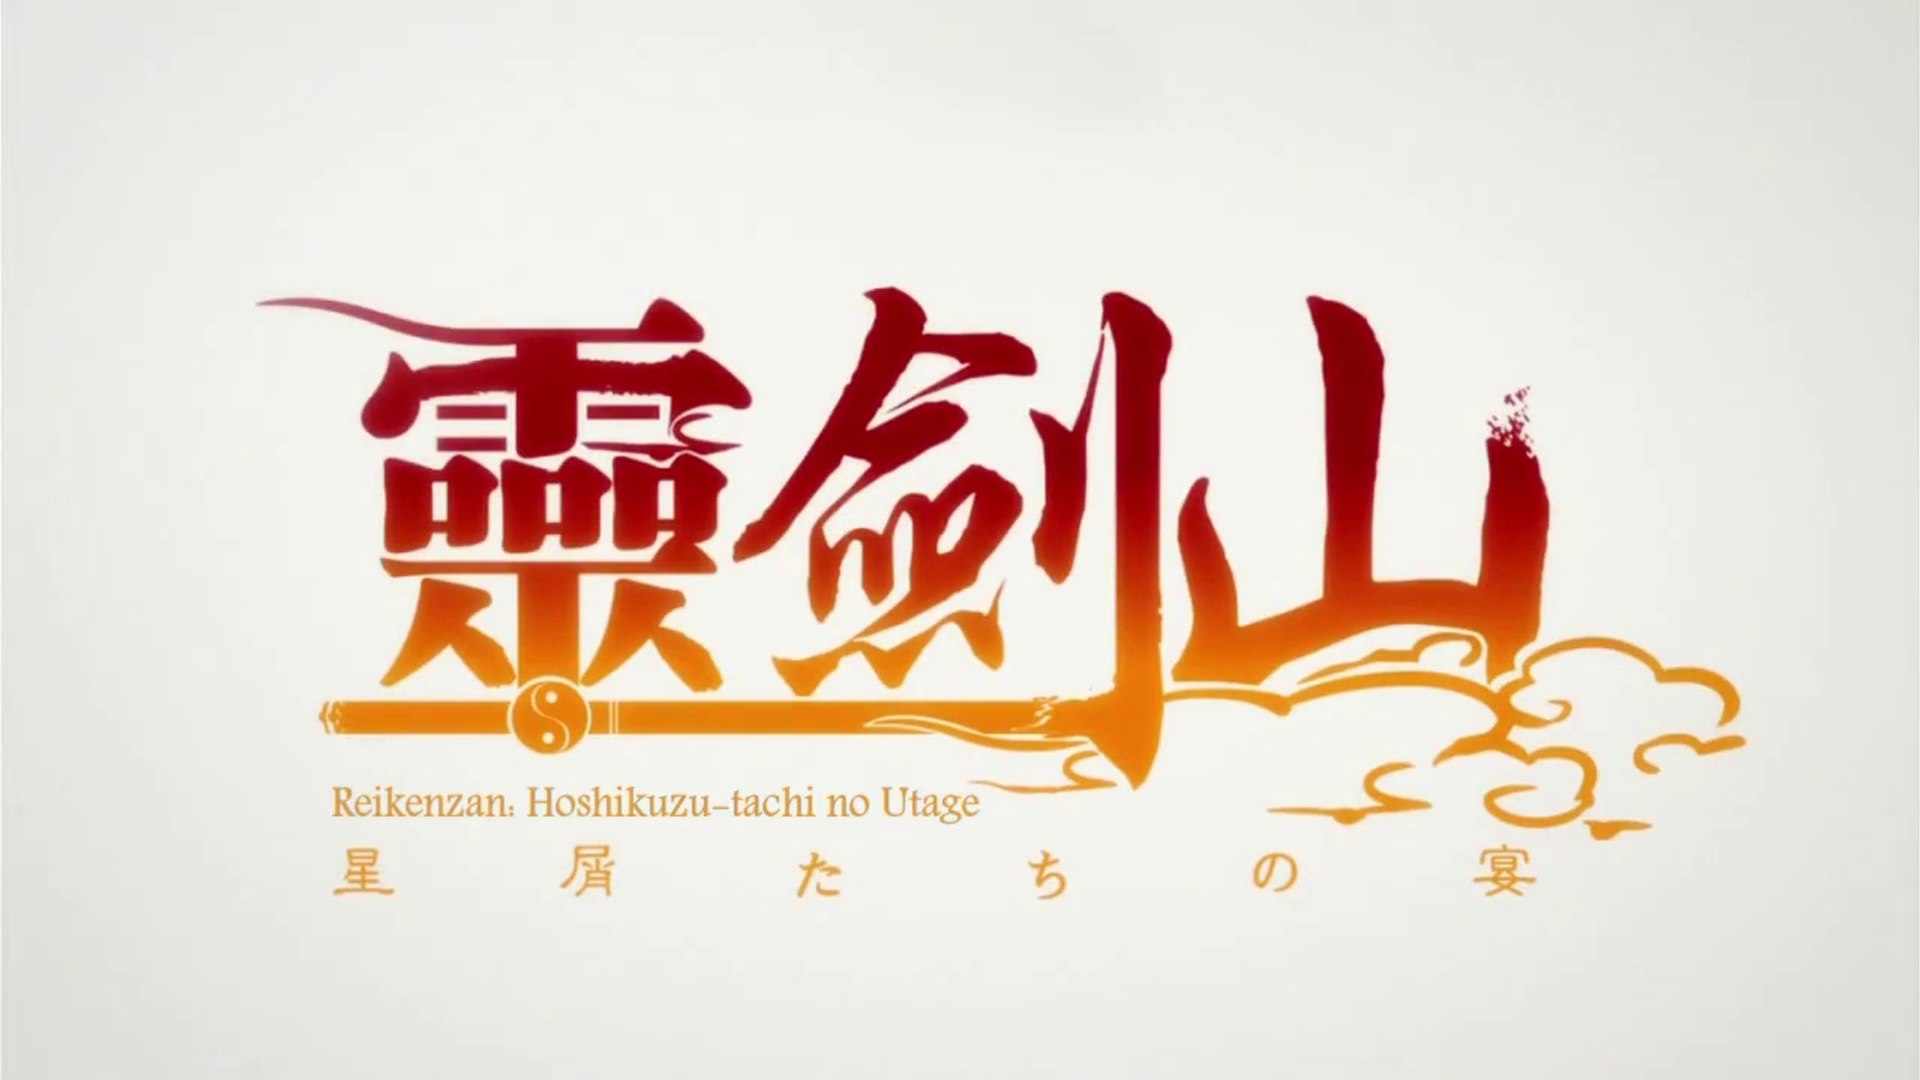 Reikenzan: Hoshikuzu-tachi no Utage 